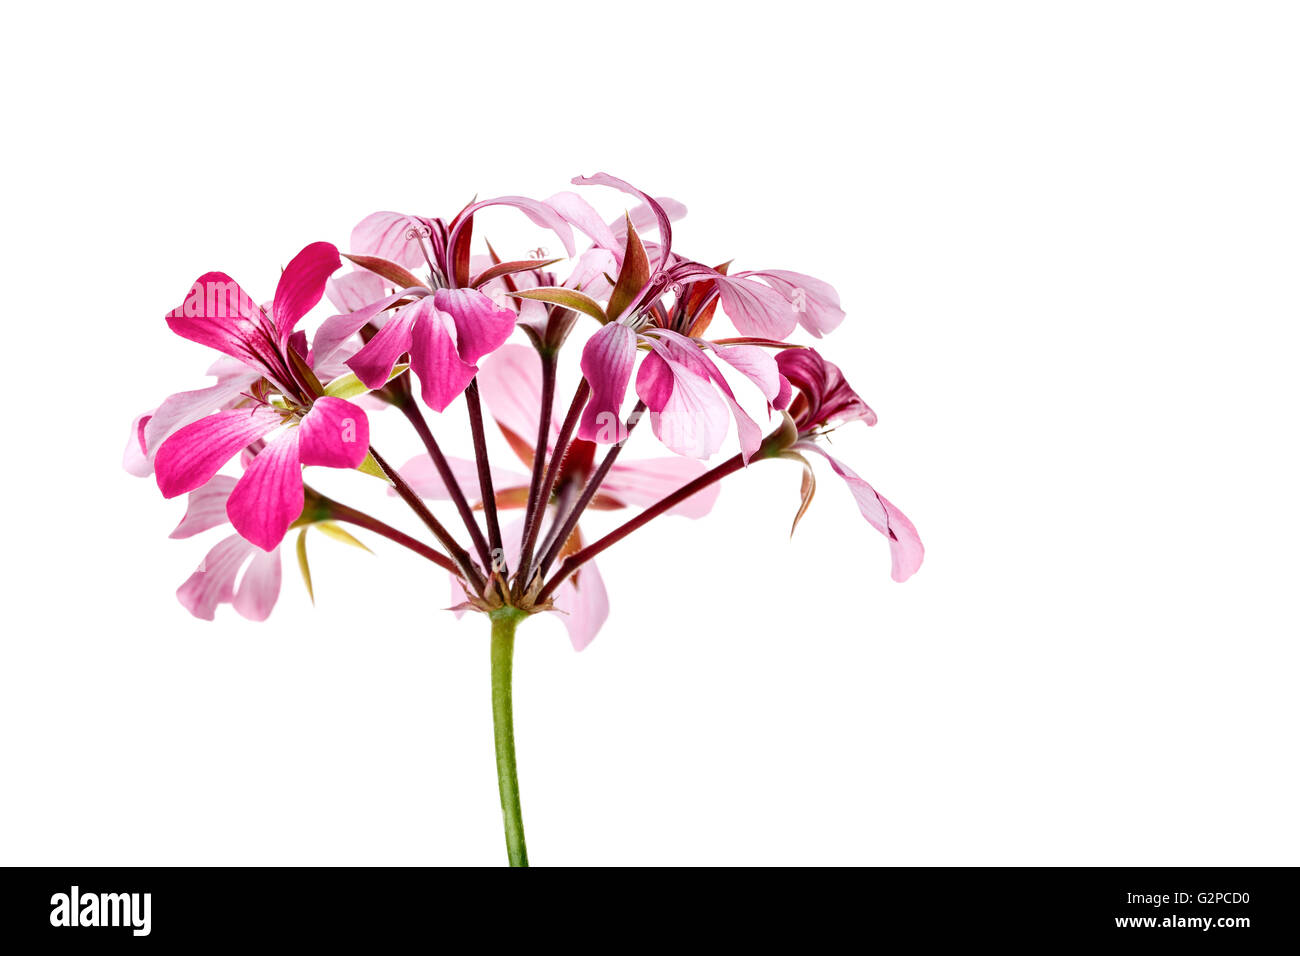 Leuchtende Geranien Blume Stockfoto